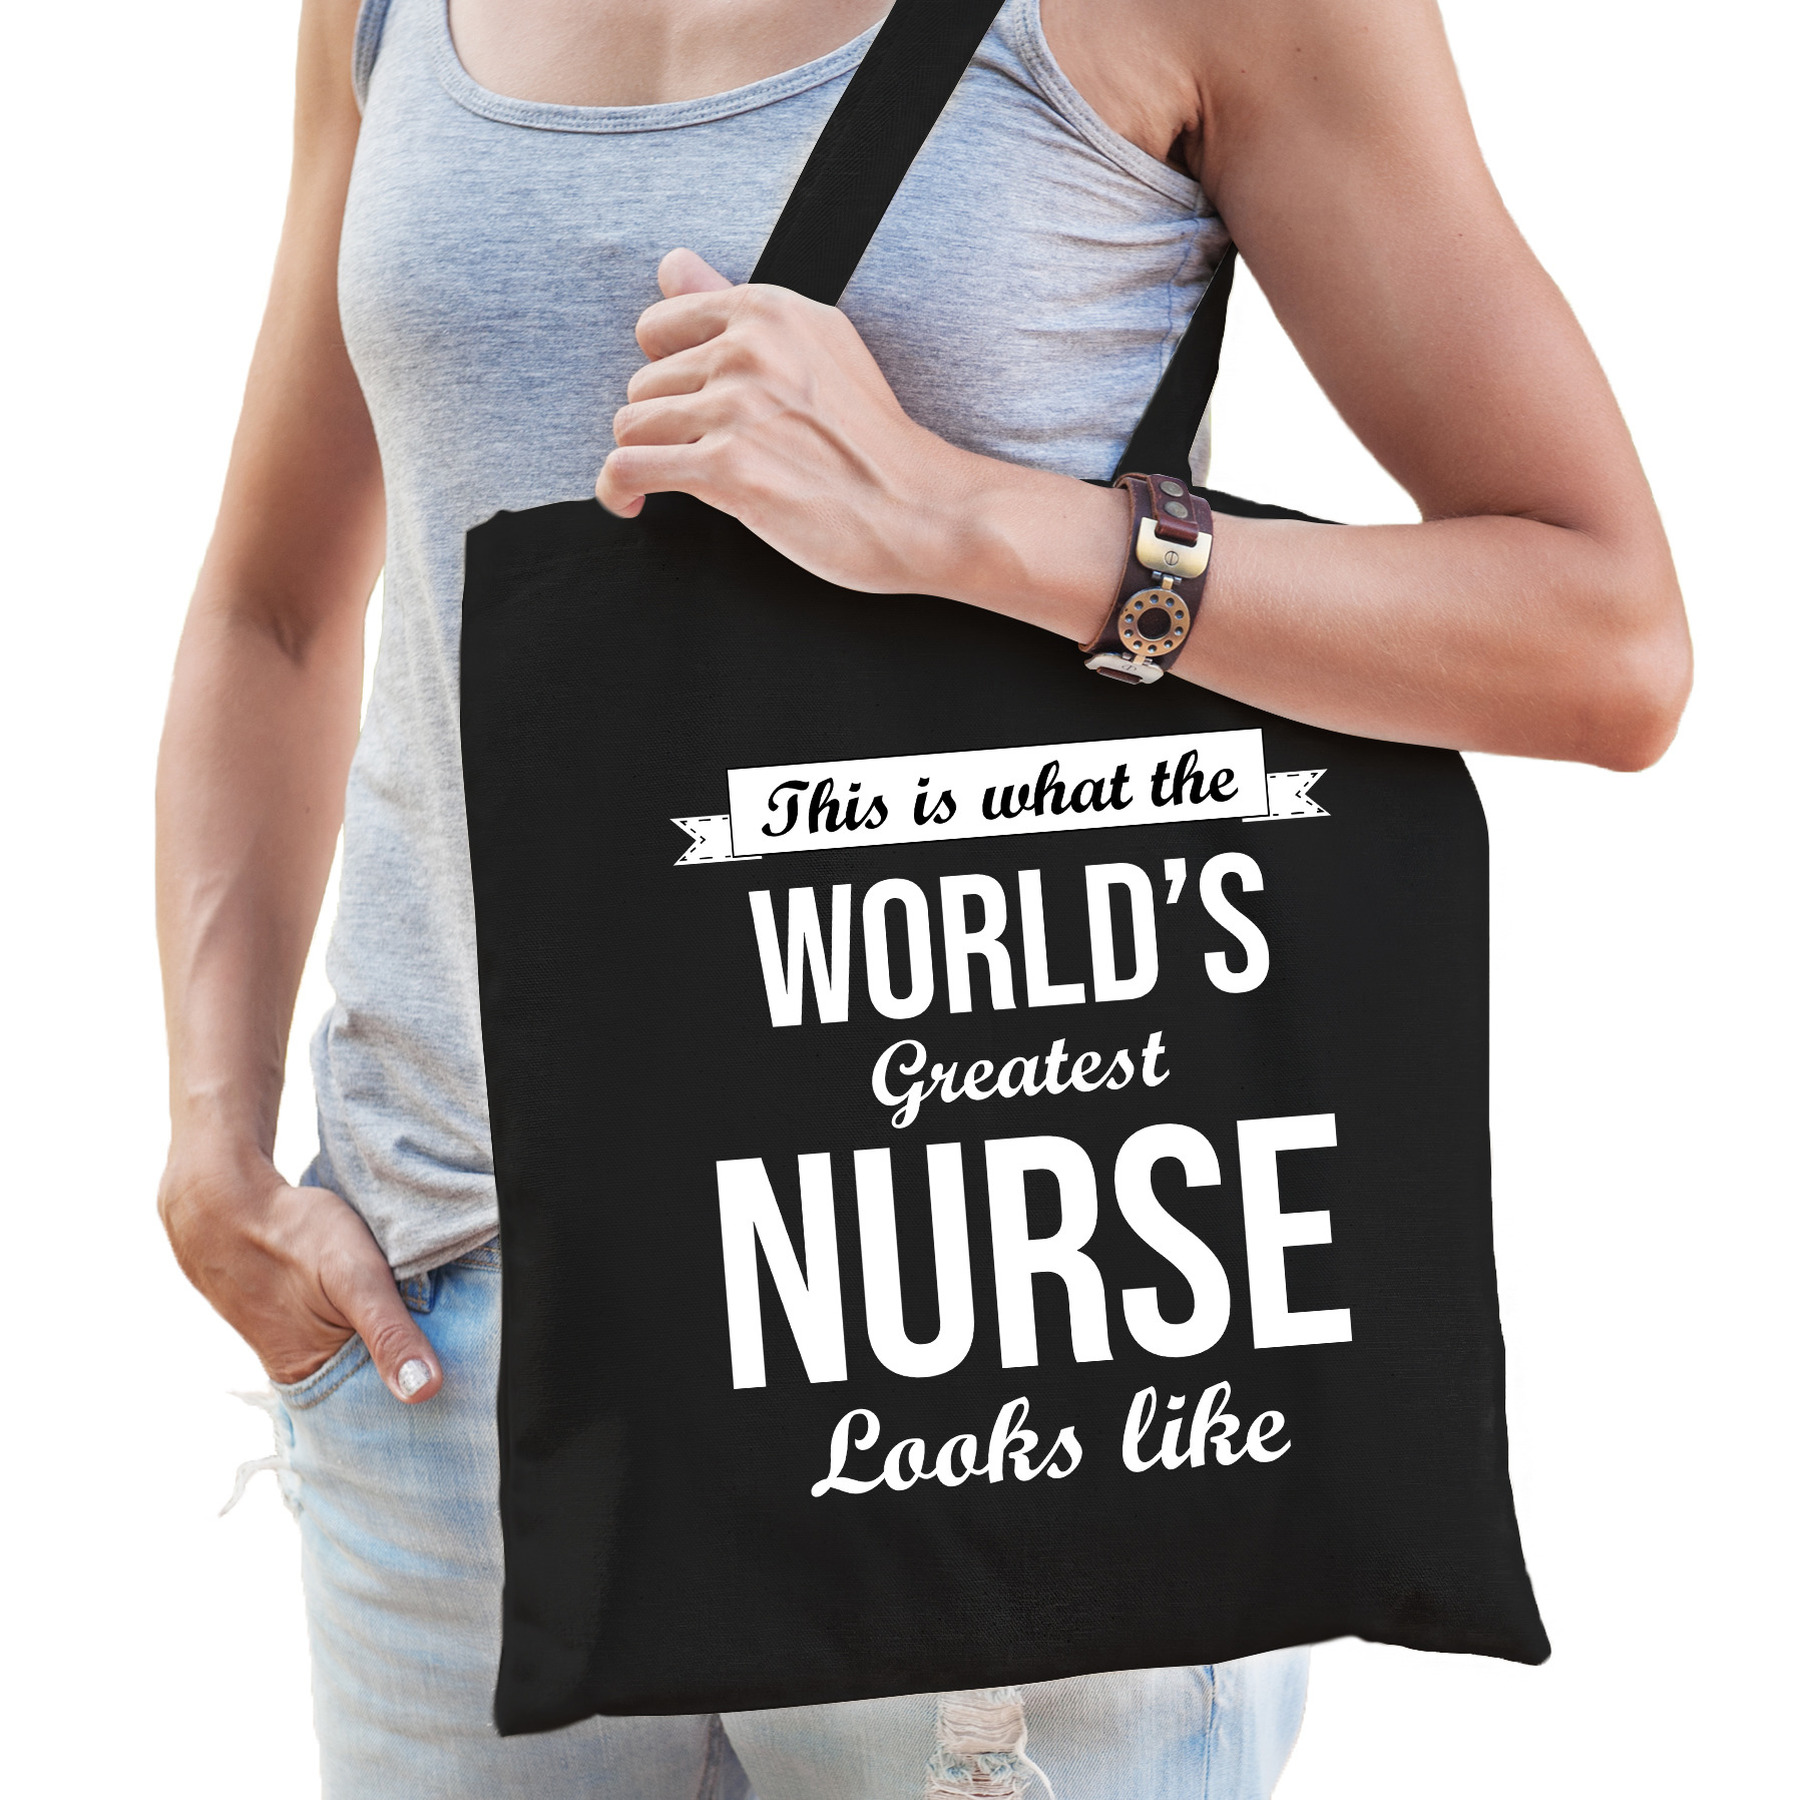 Worlds greatest nurse tas zwart volwassenen werelds beste verpleegkundige cadeau tas